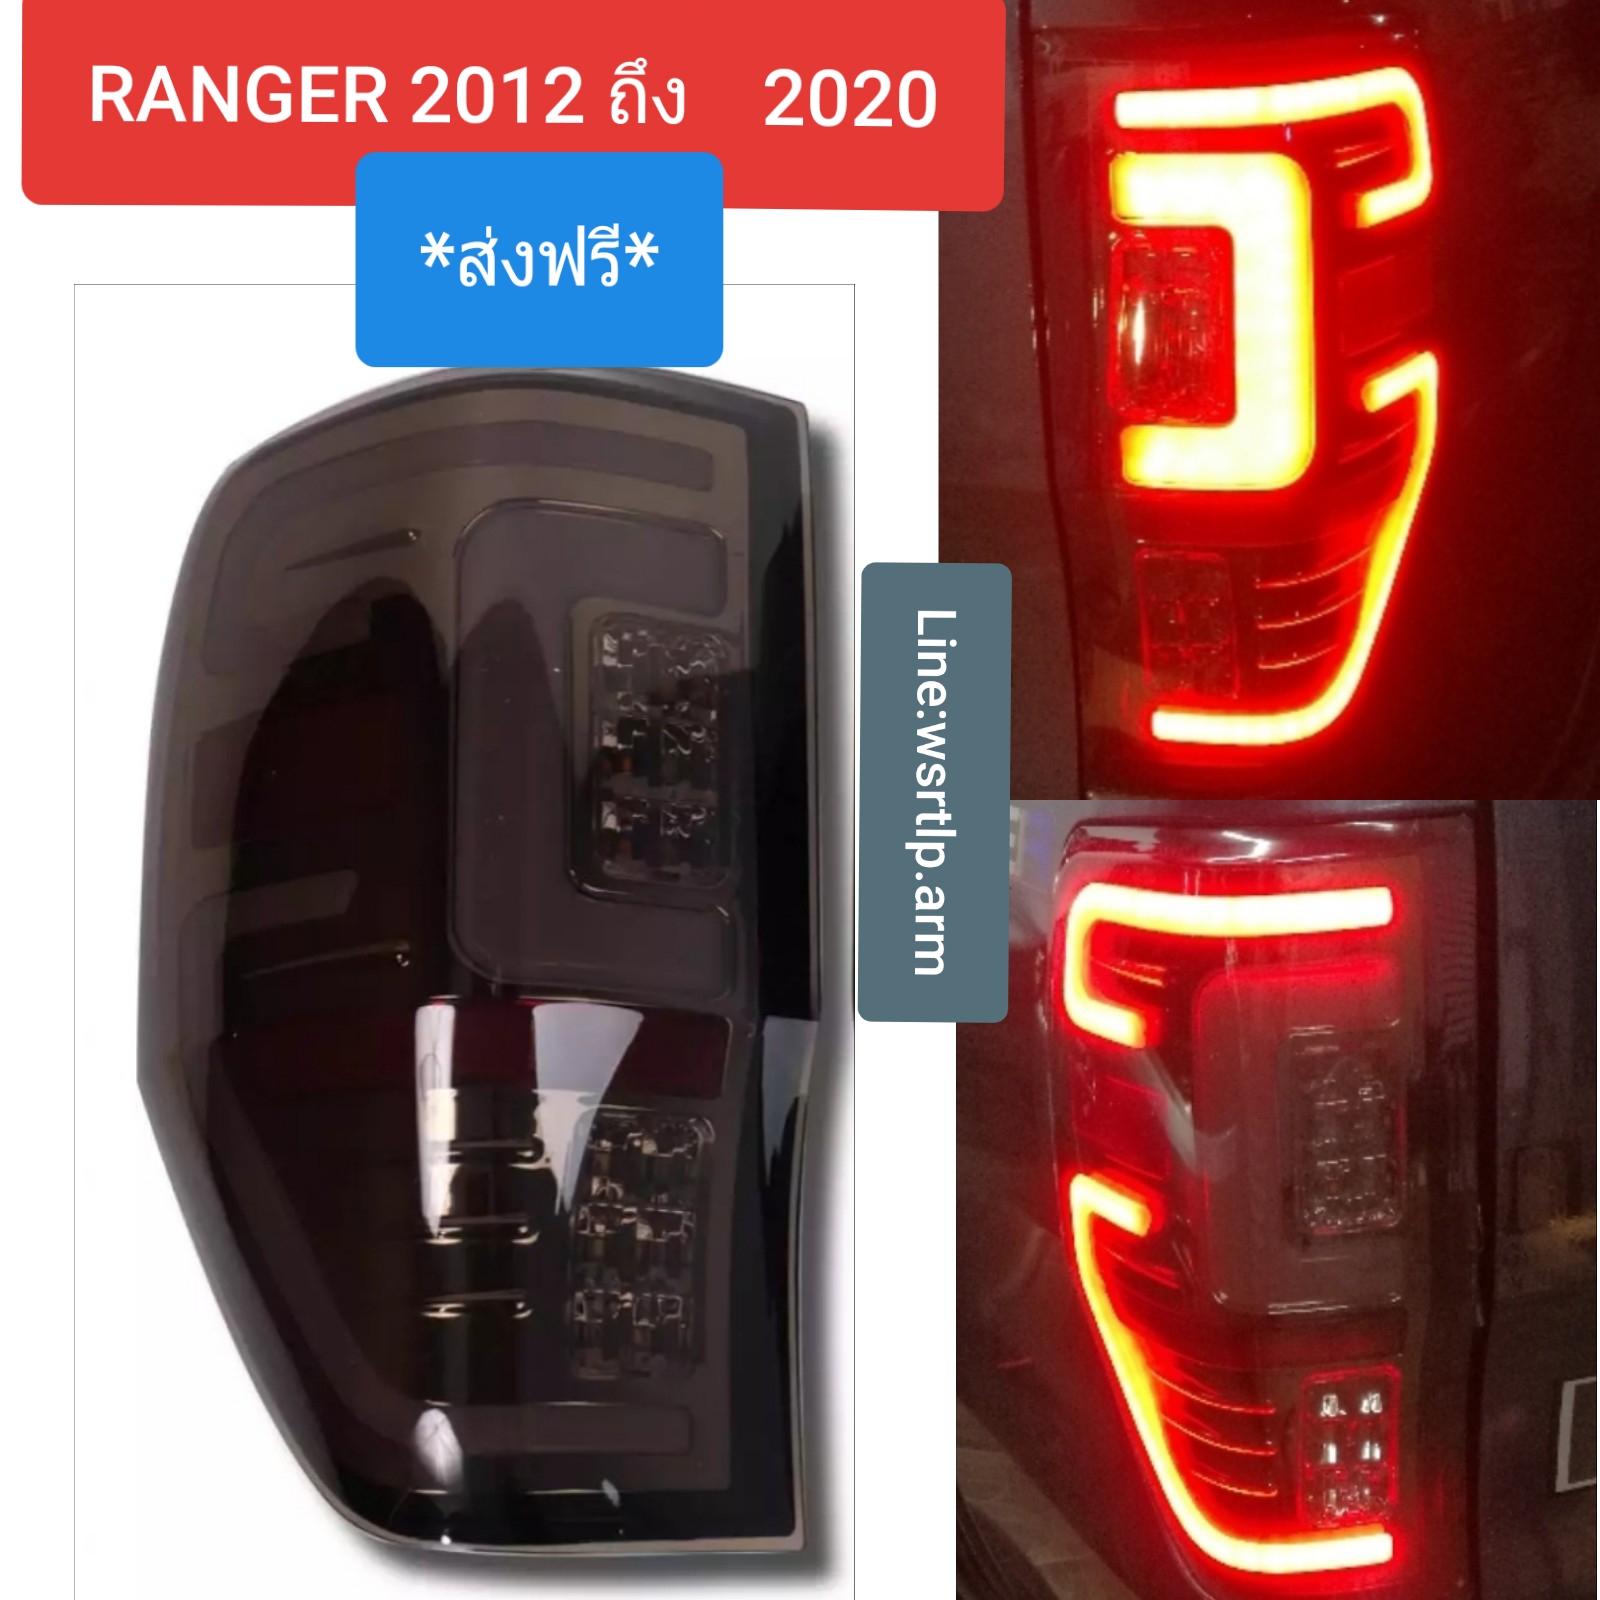 (ส่งฟรี!) ไฟท้ายแต่ง RANGER แรนเจอร์ 2012 ถึง 2020 โคมดำ LED พร้อมปลั๊กตรงรุ่นไม่ต้องตัดต่อสายไฟ ราคา 1คู่